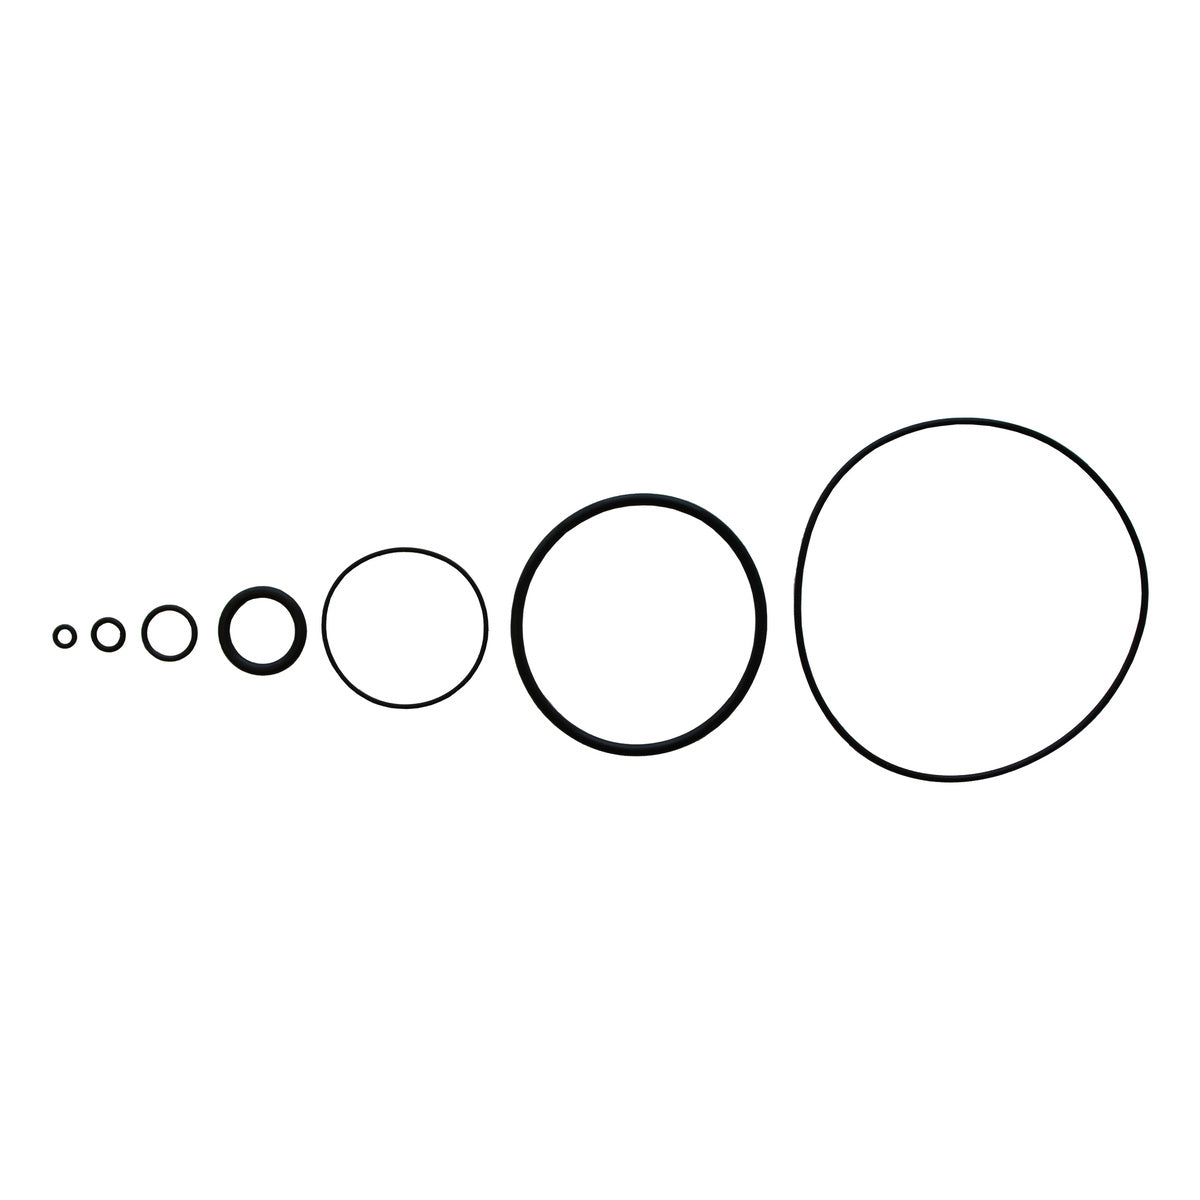 O-Ring,Viton,ISO-267, 209.14 X 3.53 MM, 320285